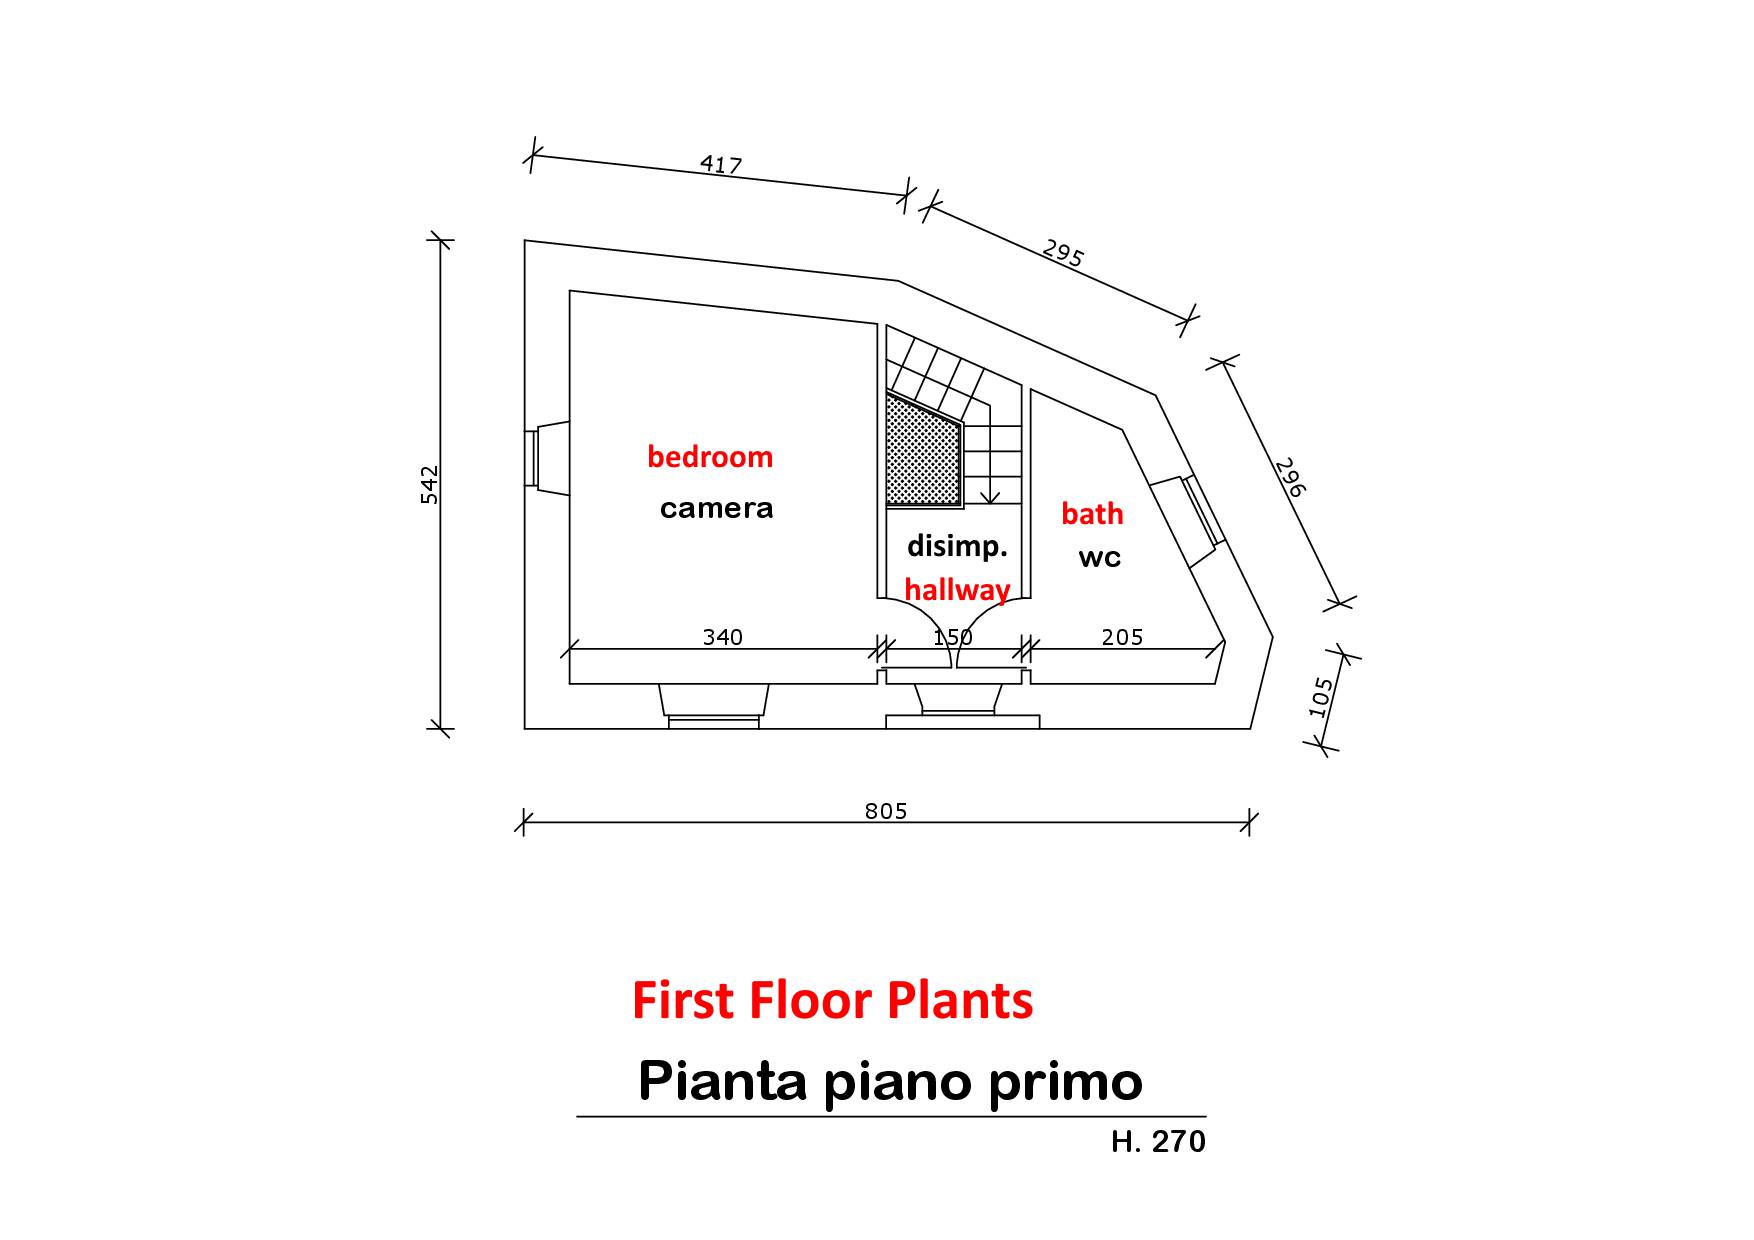 Pianta Piano Primo - First Floor Plan